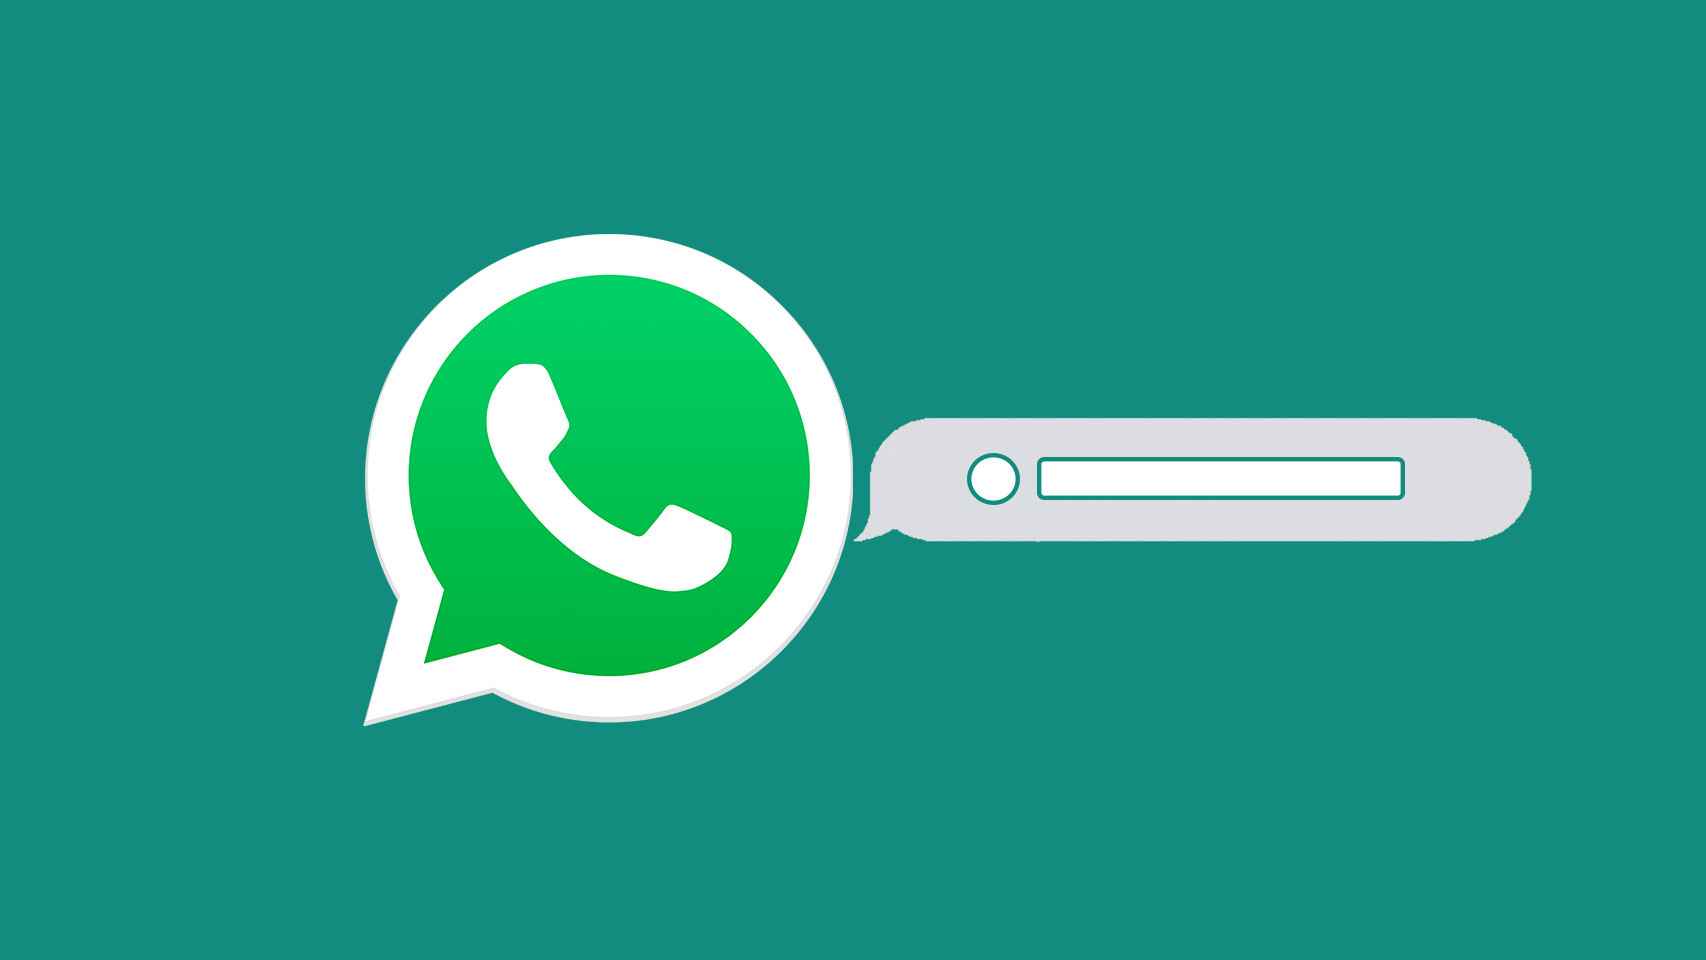 Logo de WhatsApp en un fotomontaje.